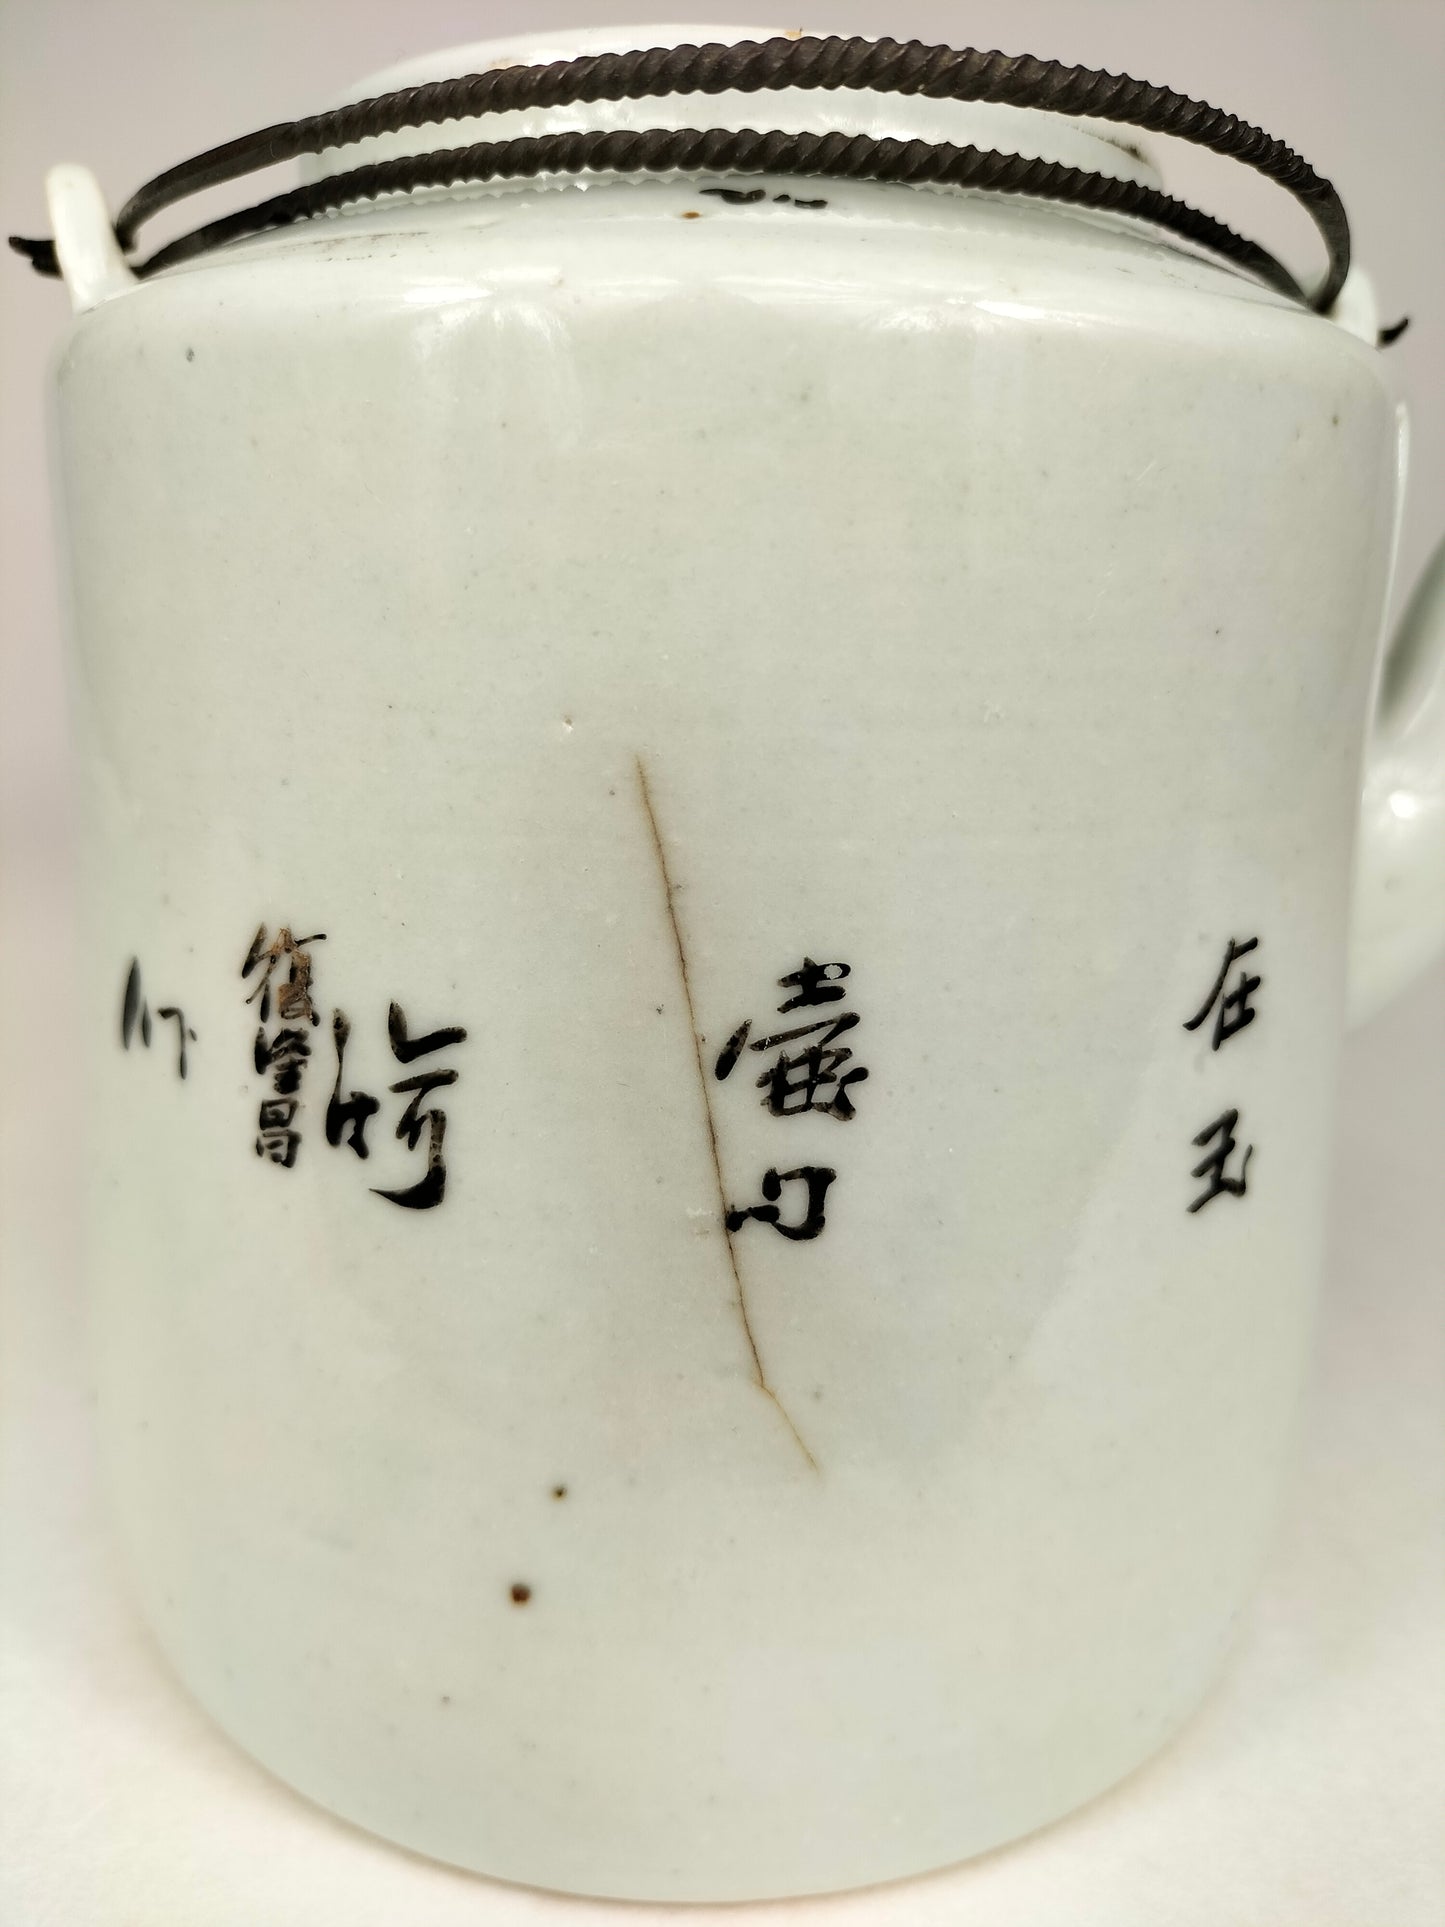 Ấm trà cổ Trung Quốc được trang trí bằng các hình vẽ // Thời kỳ Cộng hòa (1912-1949)